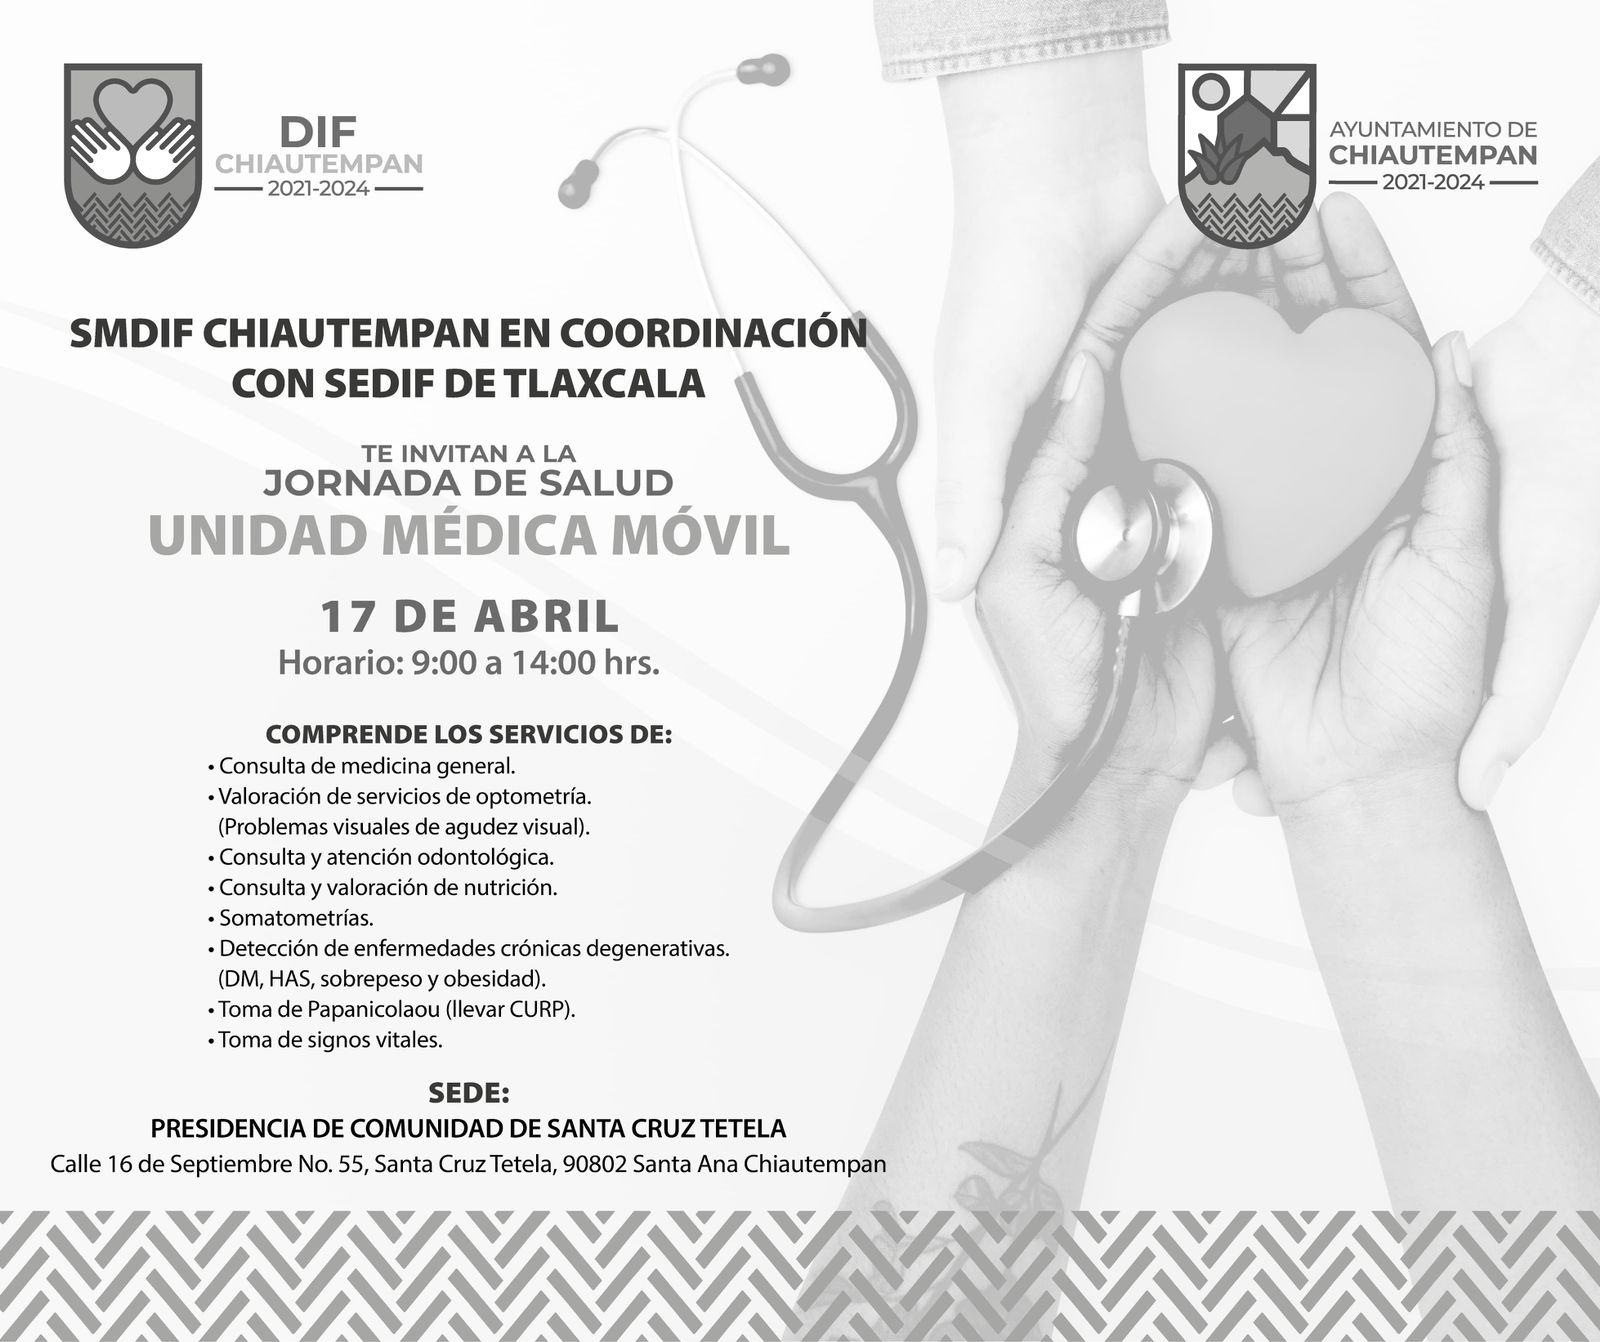 Ayuntamiento de Chiautempan y el SMDIF invitan a la Unidad Médica Móvil en Santa Cruz Tetela